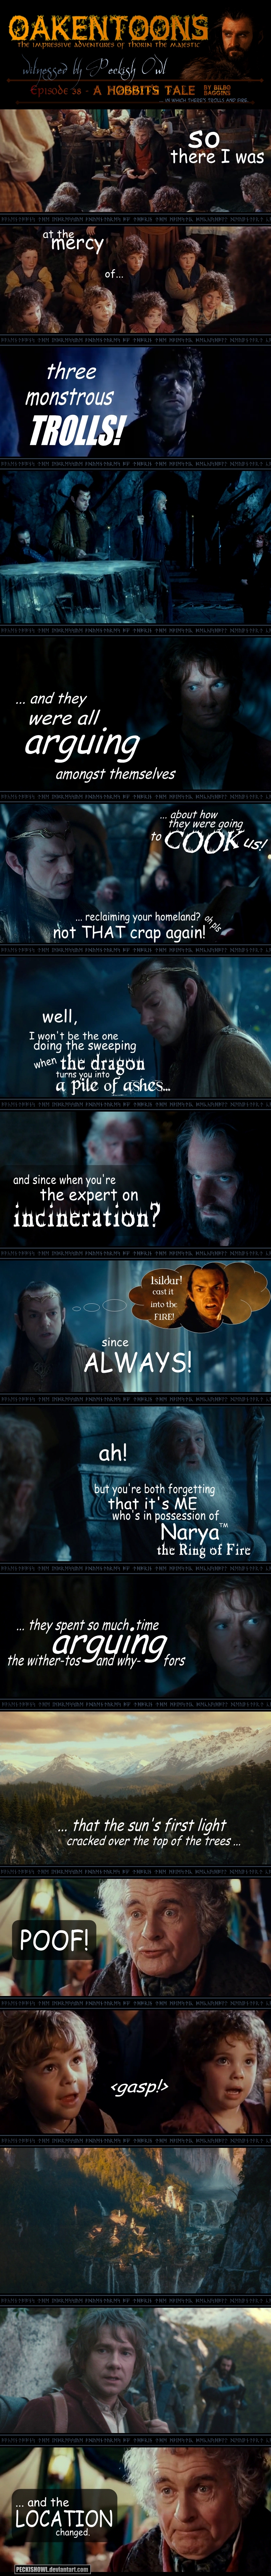 Oakentoon #38: A HOBBIT'S TALE by Bilbo Baggins